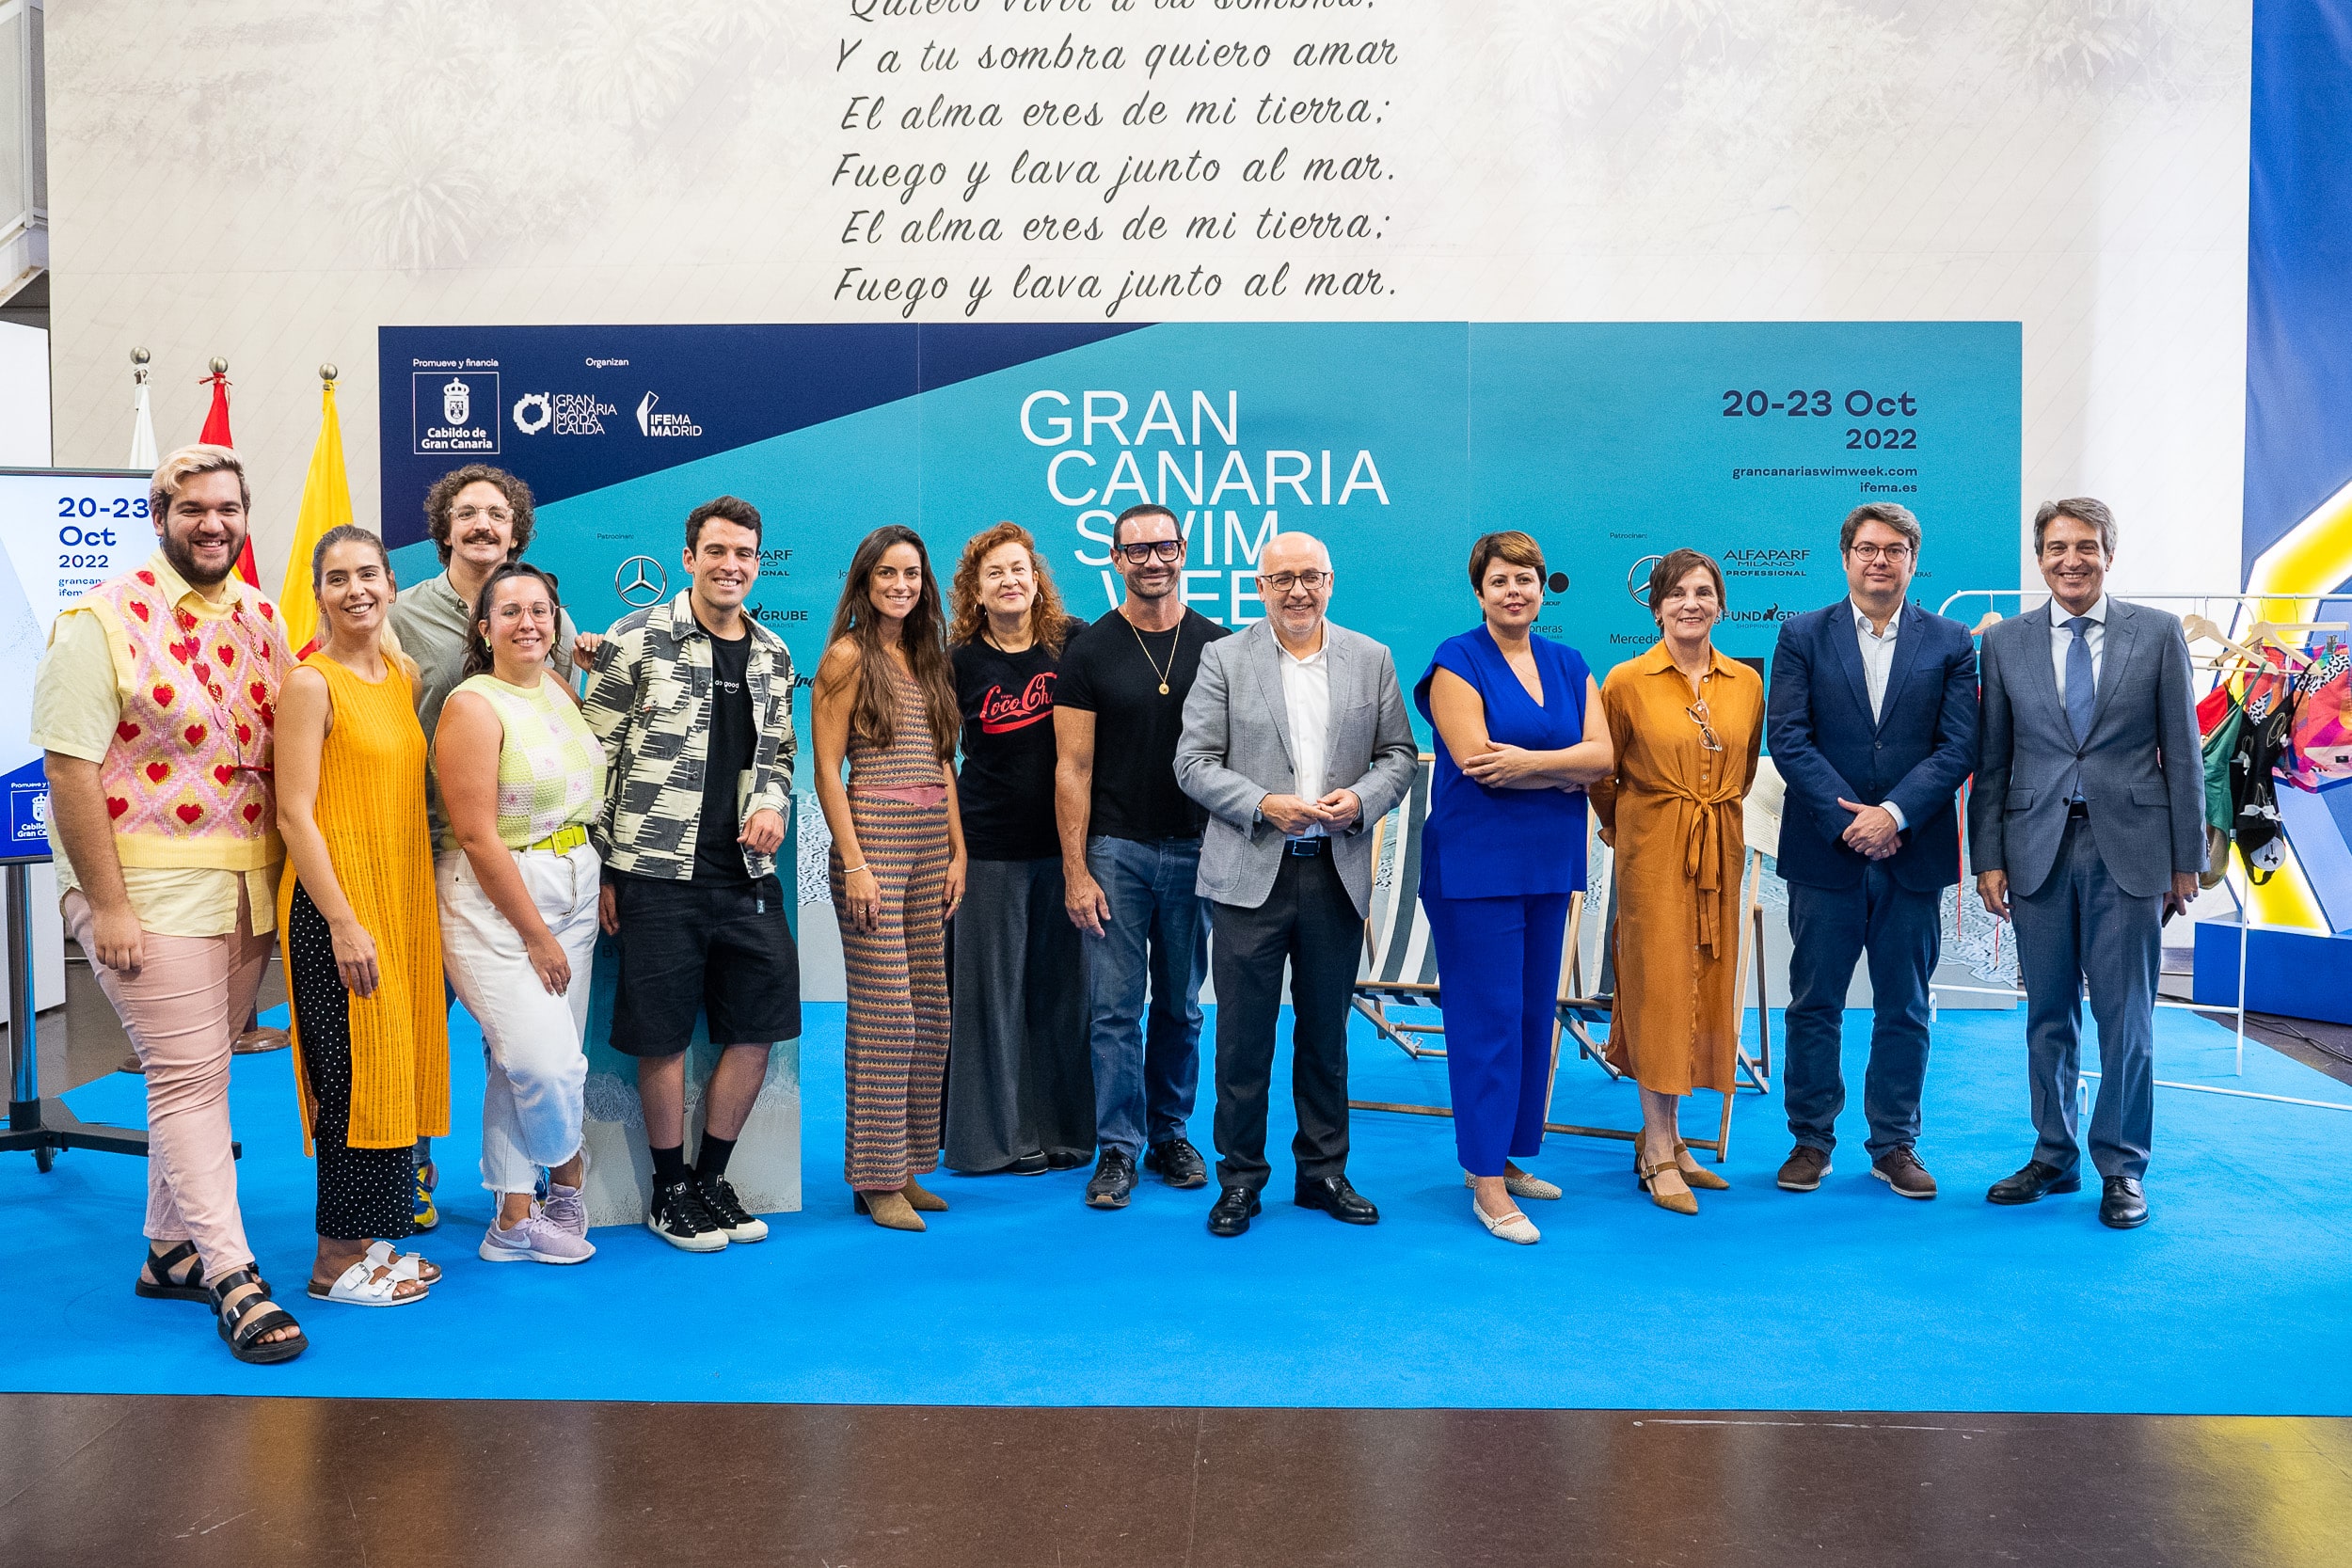 Gran Canaria Swim Week by Moda Cálida presenta las firmas y colecciones que desfilarán en esta nueva edición 2022